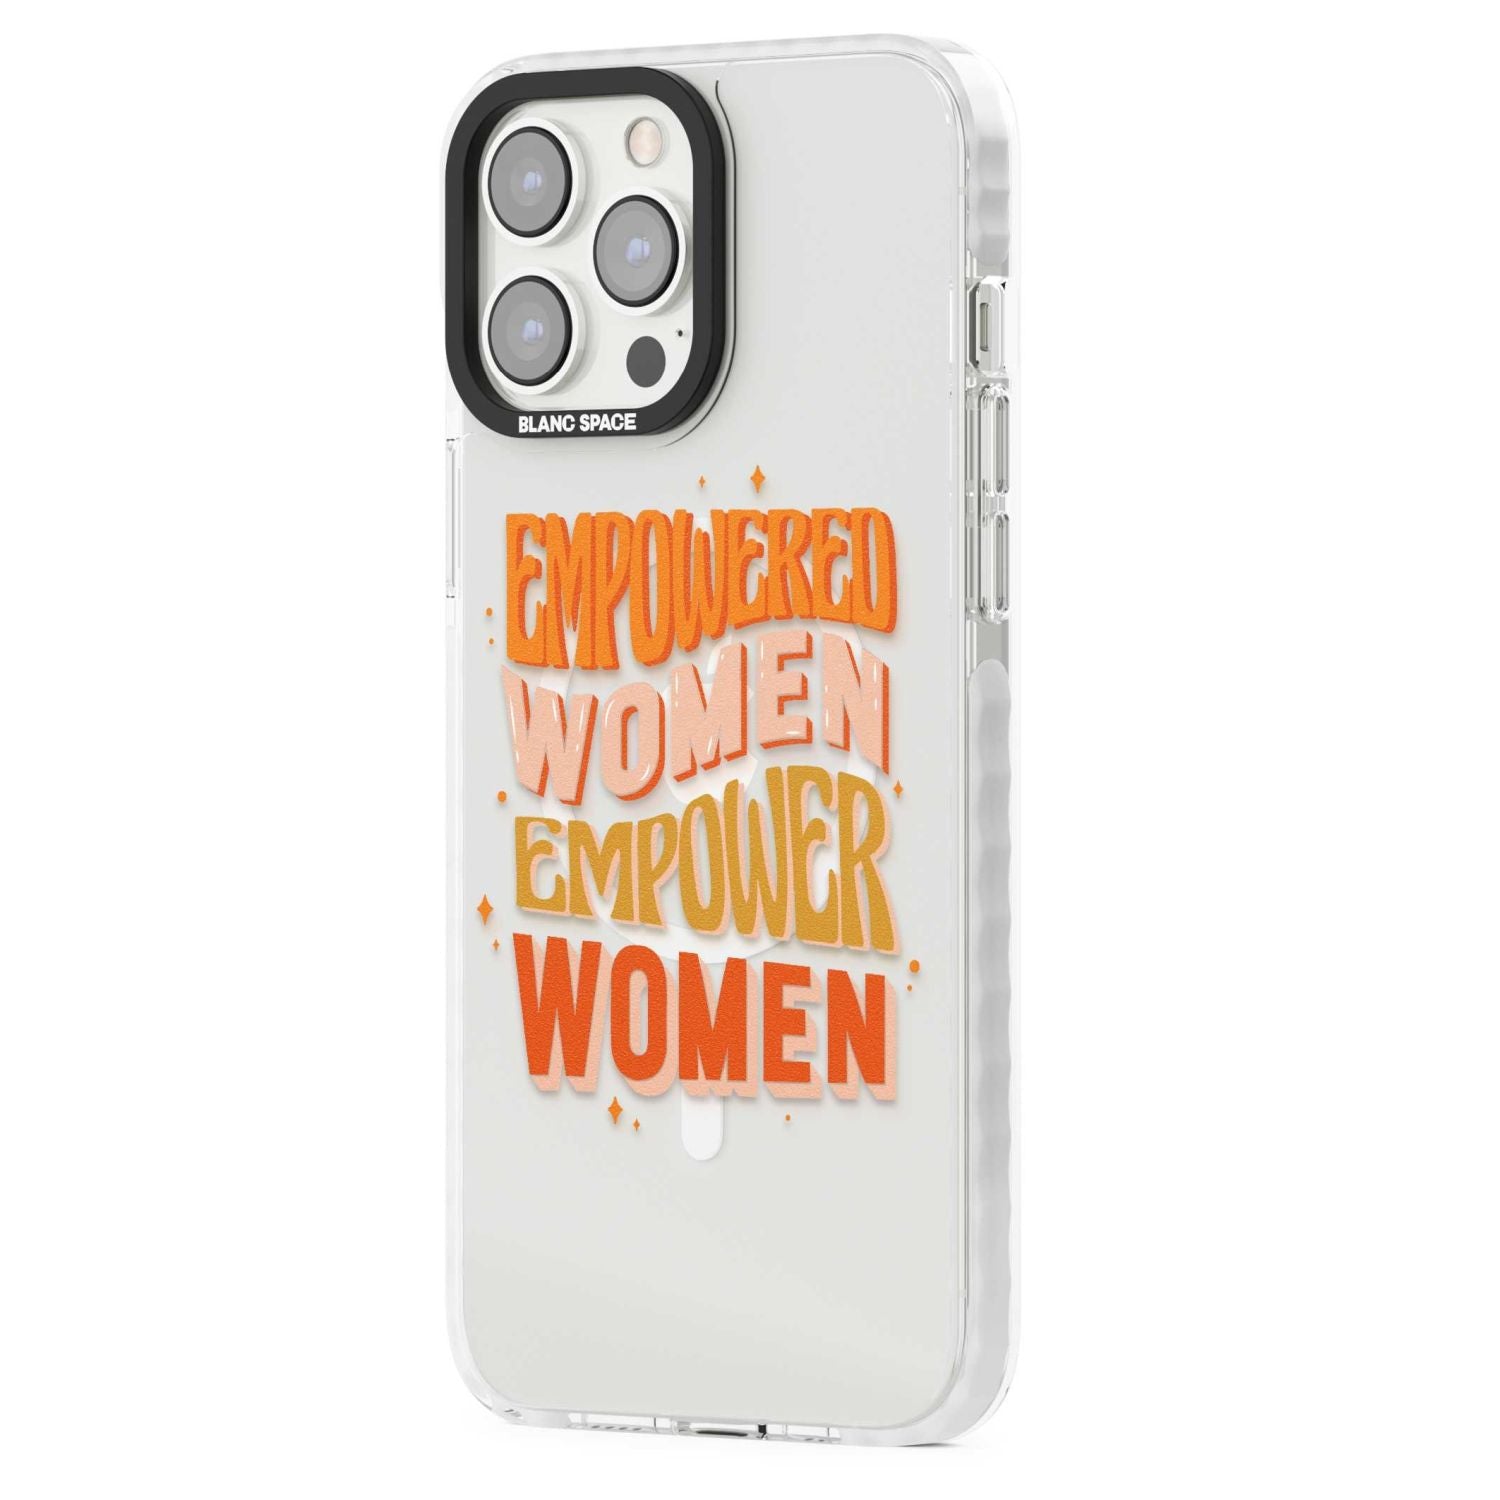 Empowered Women